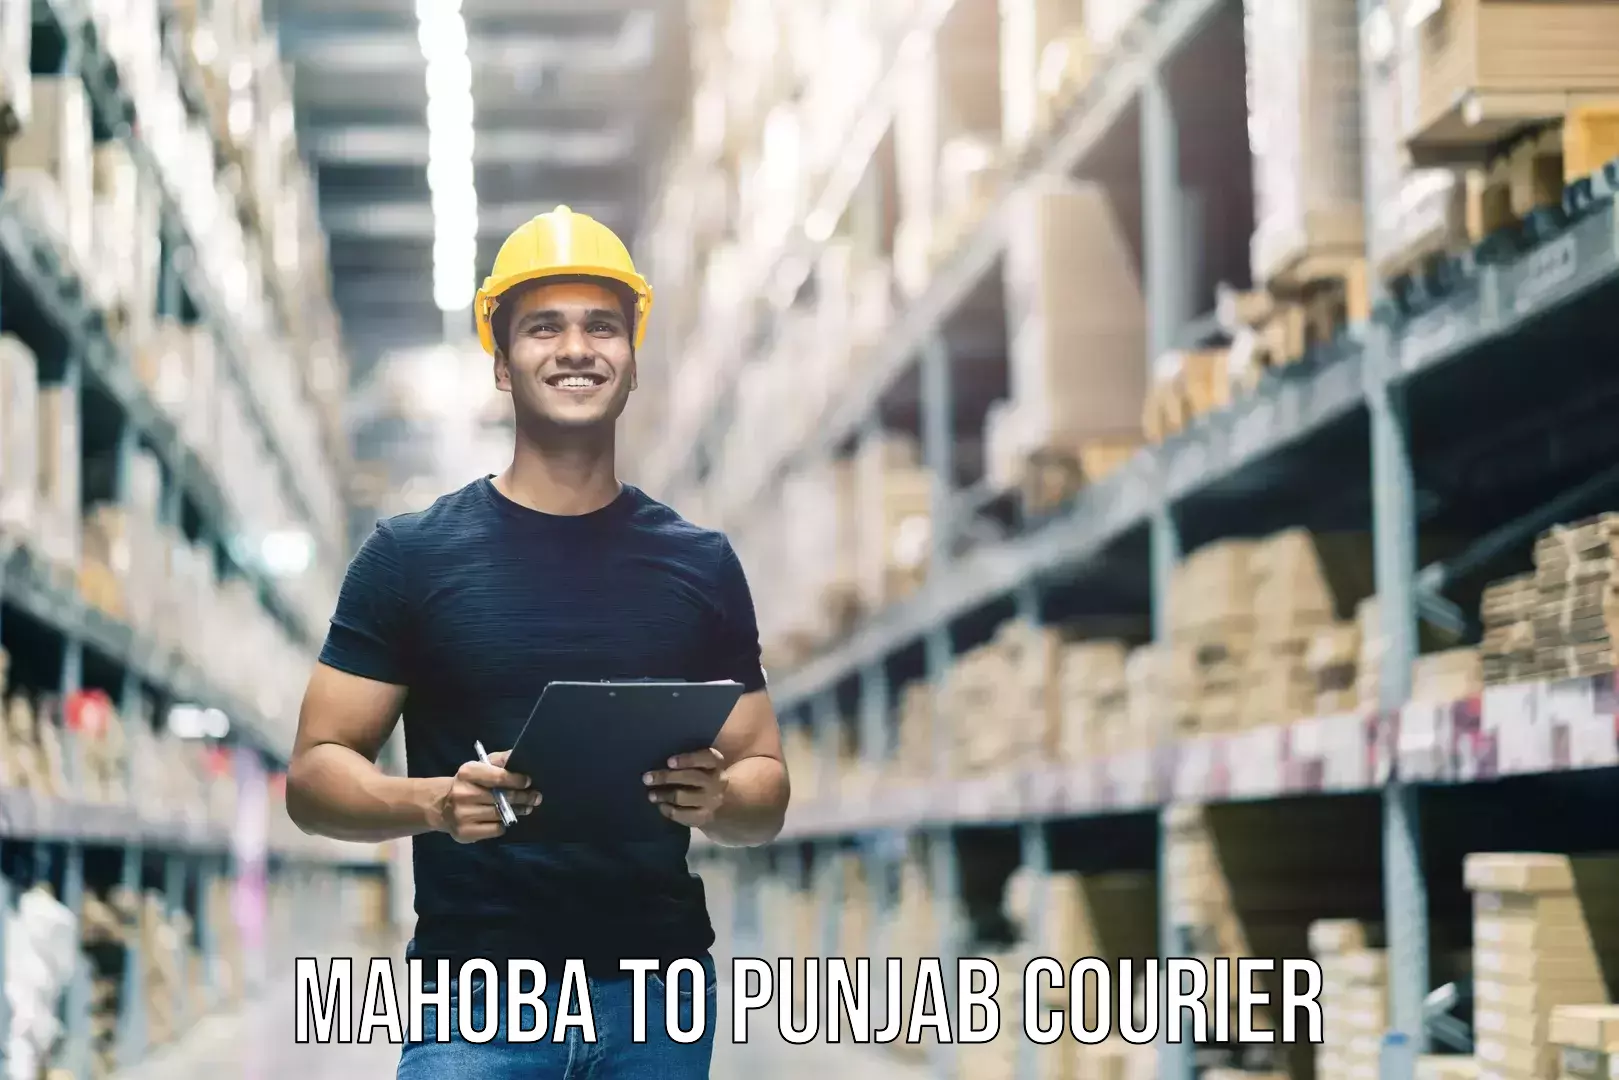 Baggage shipping experience Mahoba to Punjab